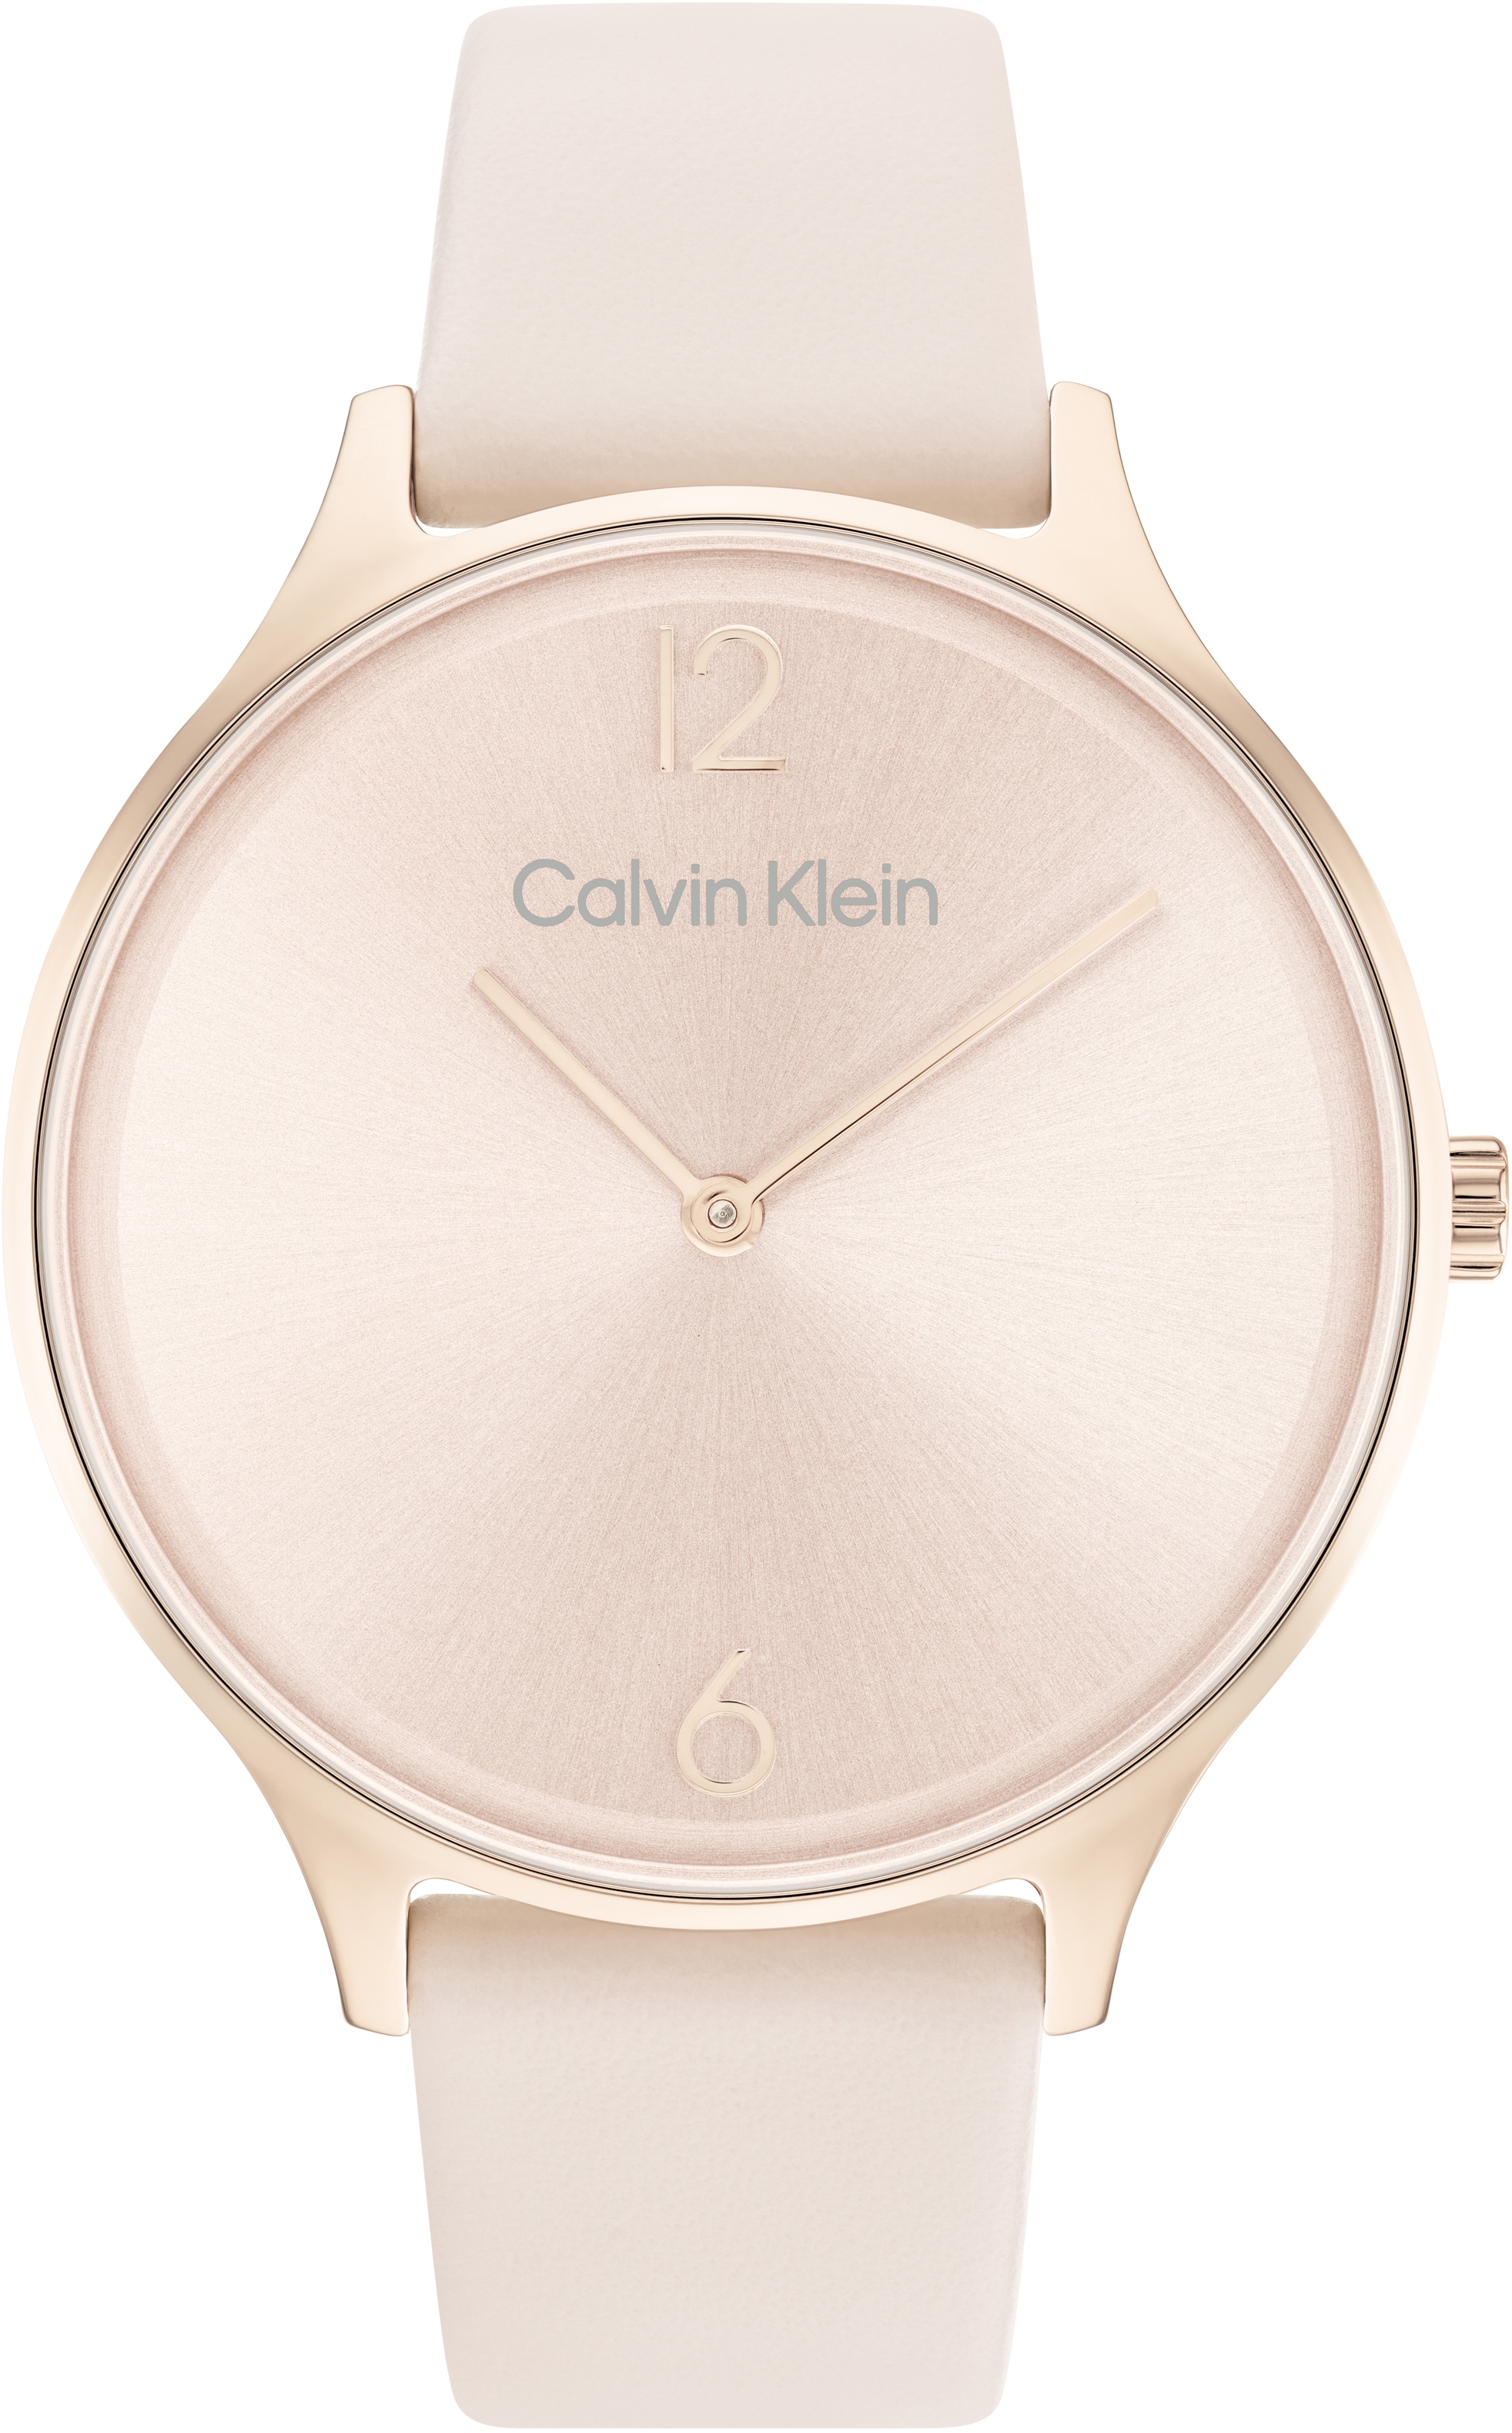 Calvin Klein Quarzuhr »Timeless 2H, 25200009«, Armbanduhr, Damenuhr, Mineralglas, IP-Beschichtung